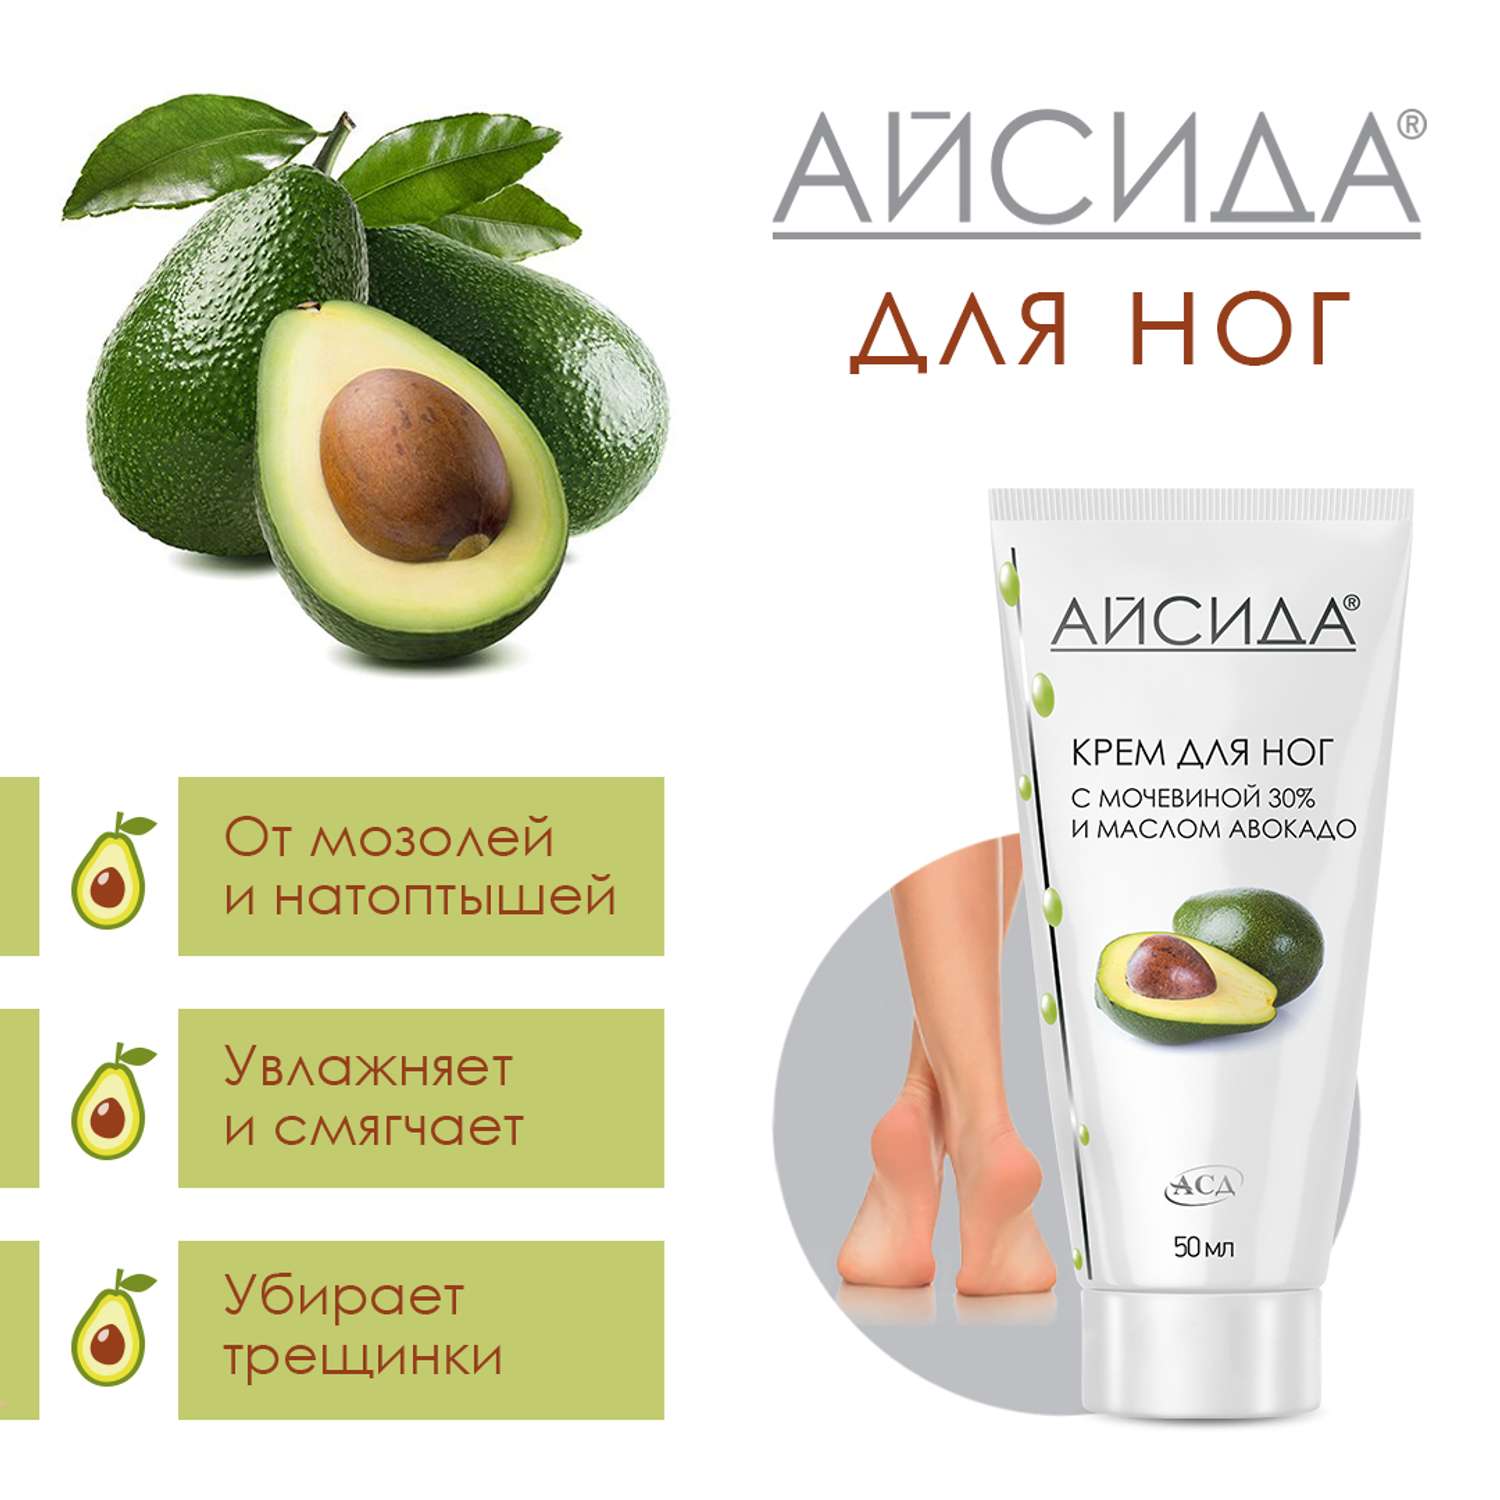 Крем для ног Айсида восстанавливающий с мочевиной 30% и маслом авокадо содержит АСД 50 мл - фото 2